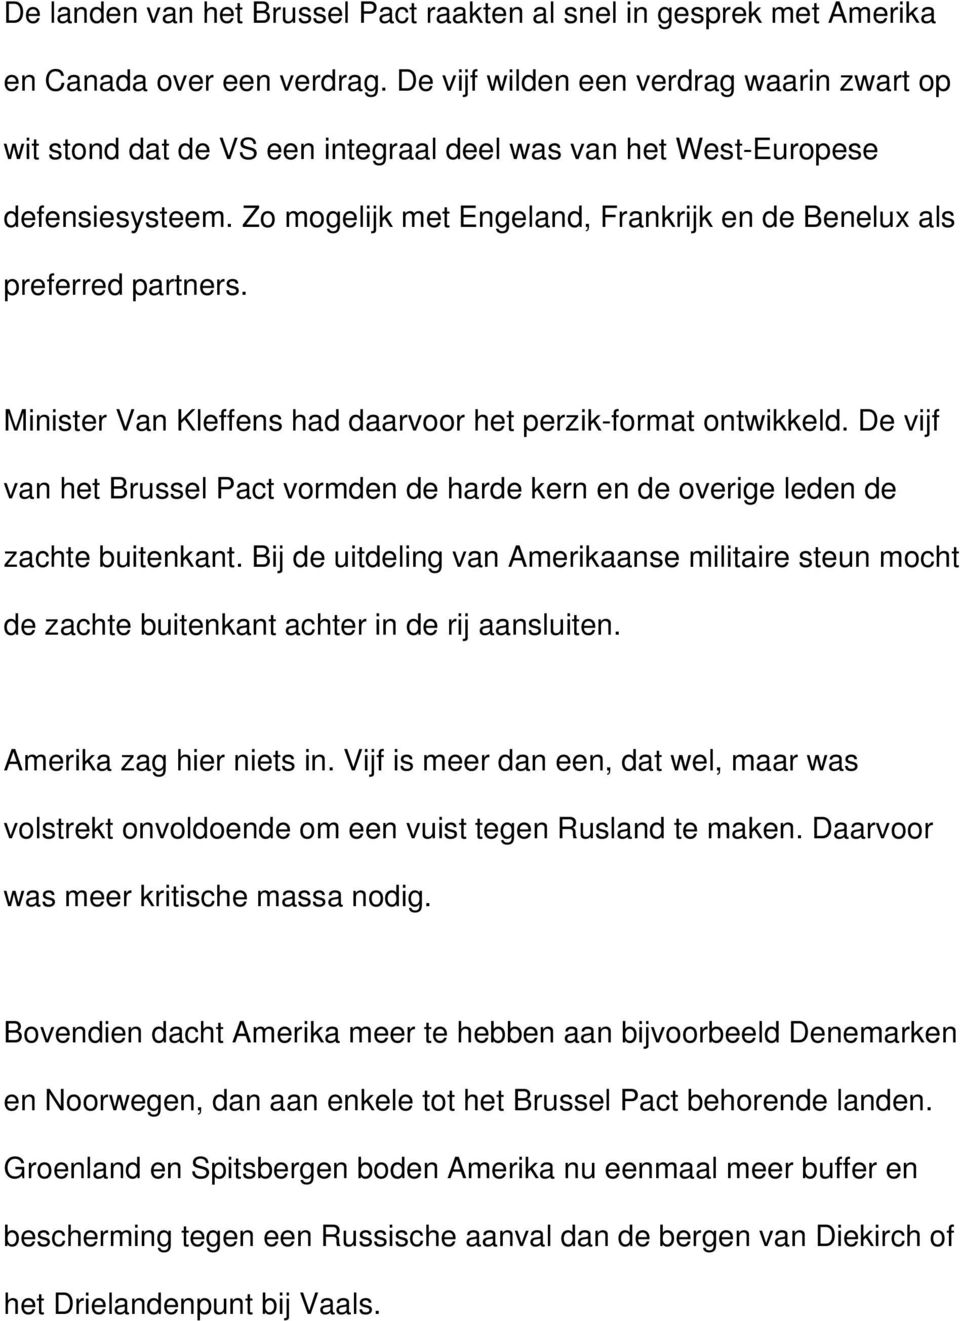 Minister Van Kleffens had daarvoor het perzik-format ontwikkeld. De vijf van het Brussel Pact vormden de harde kern en de overige leden de zachte buitenkant.